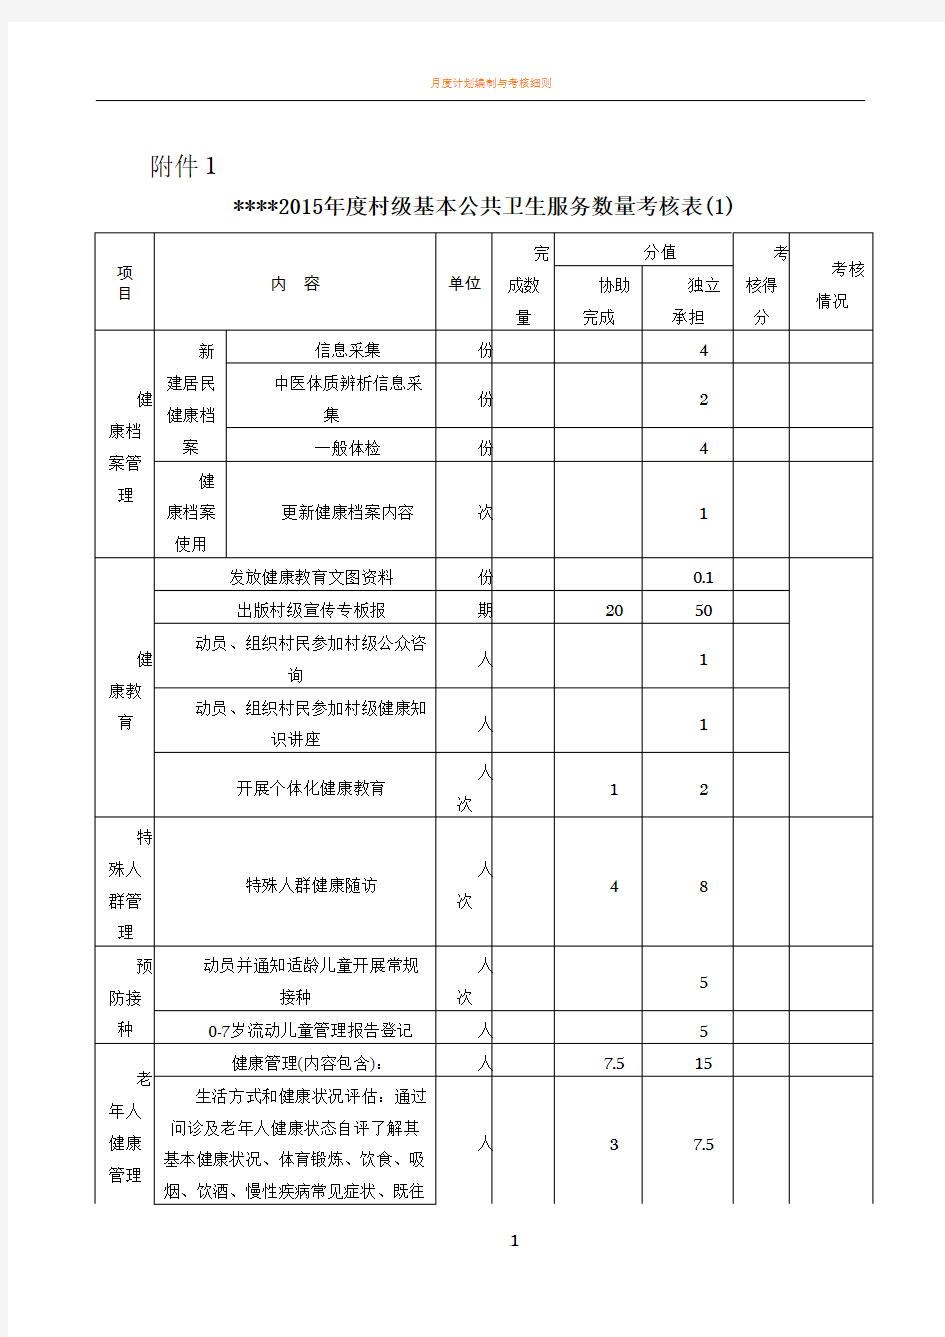 村医考核评分表(全)